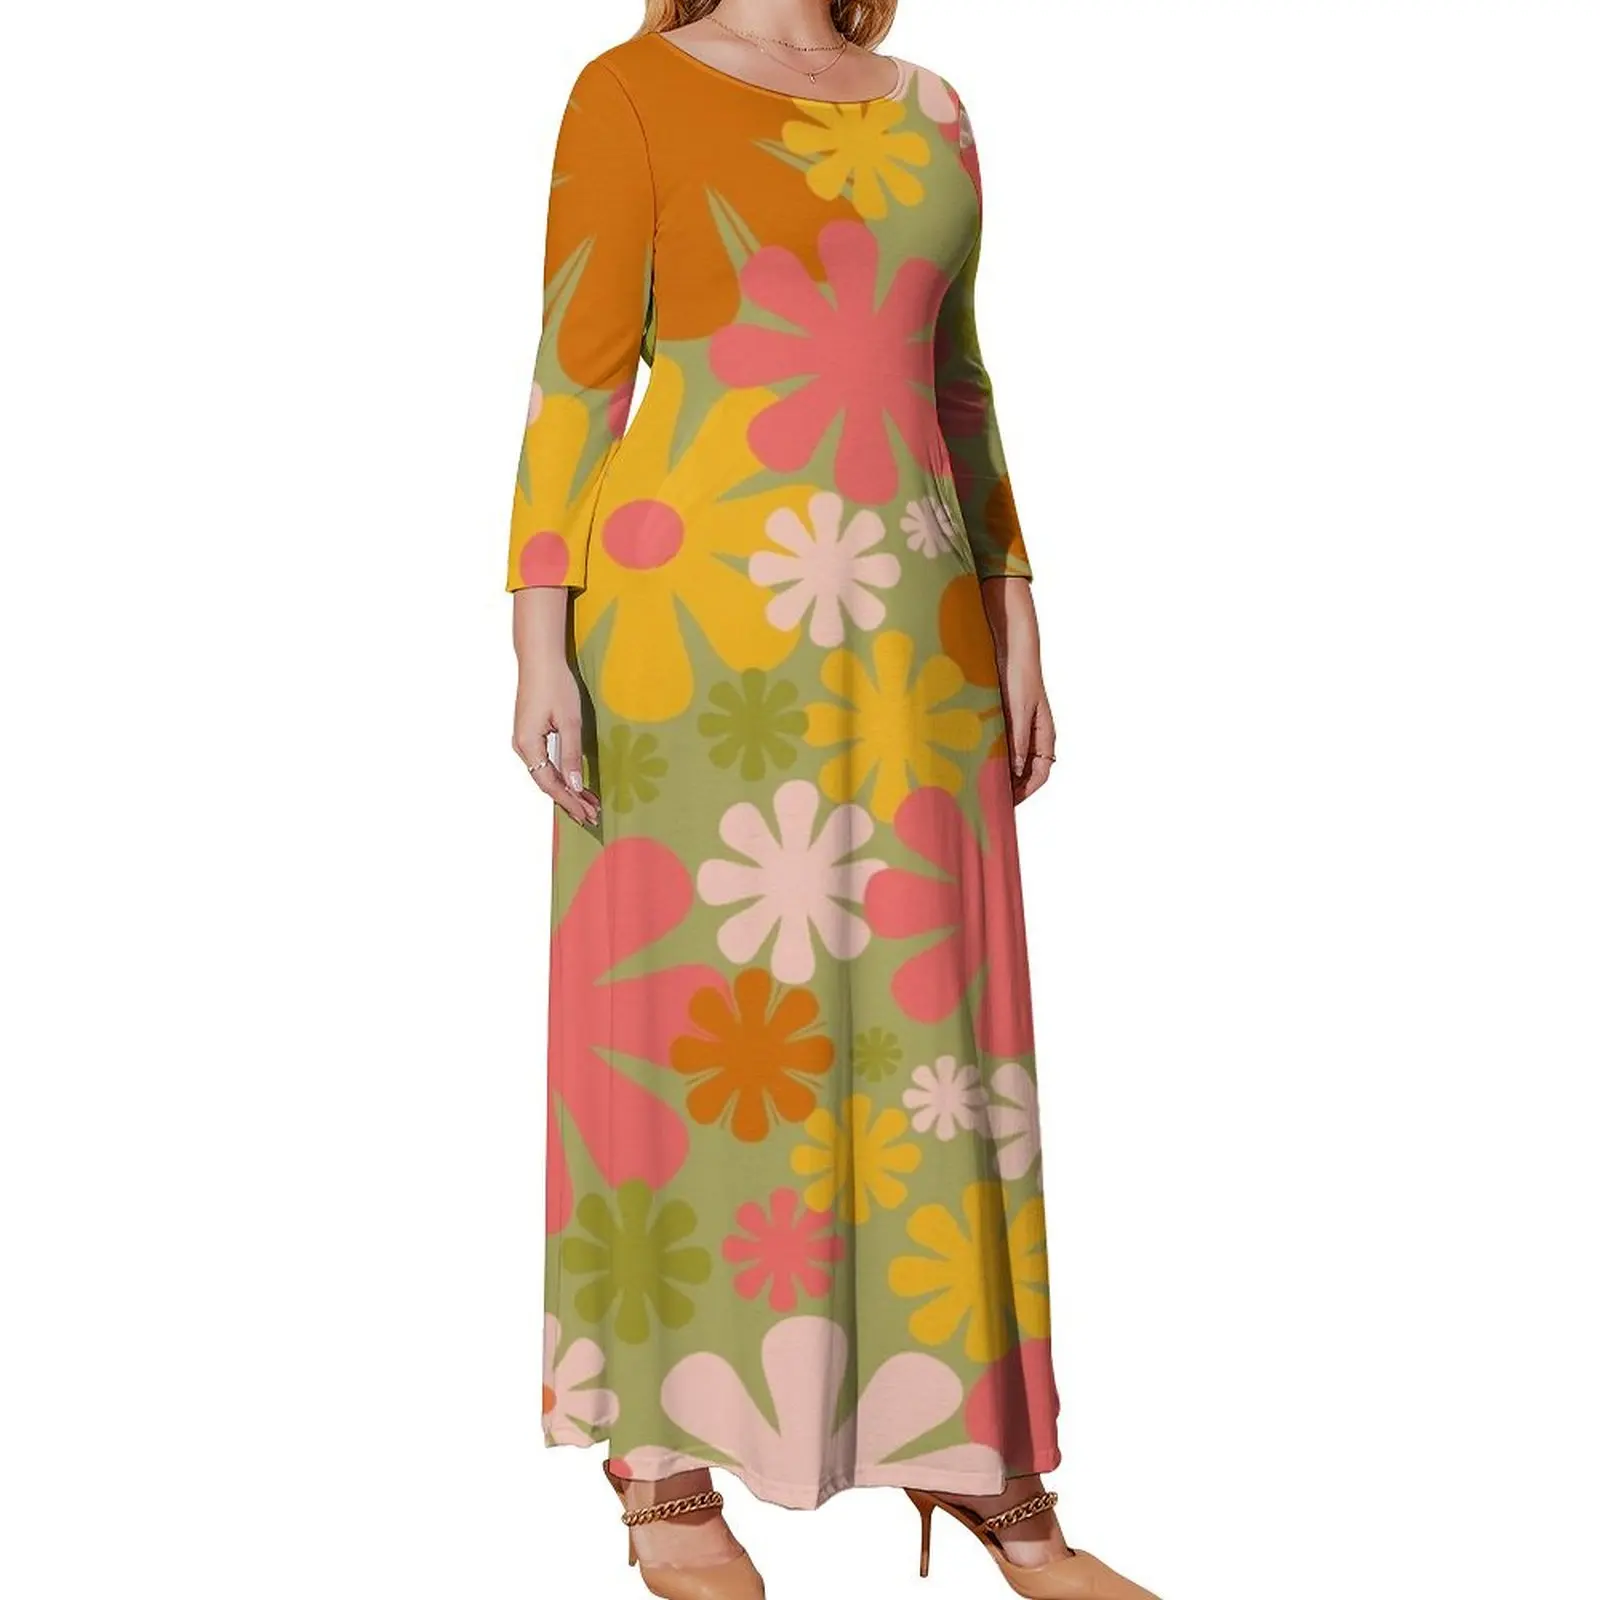 

Женское вечернее платье в стиле ретро, зеленое, розовое, желтое, оранжевое платье с длинным рукавом и цветочным принтом в стиле 60-х годов